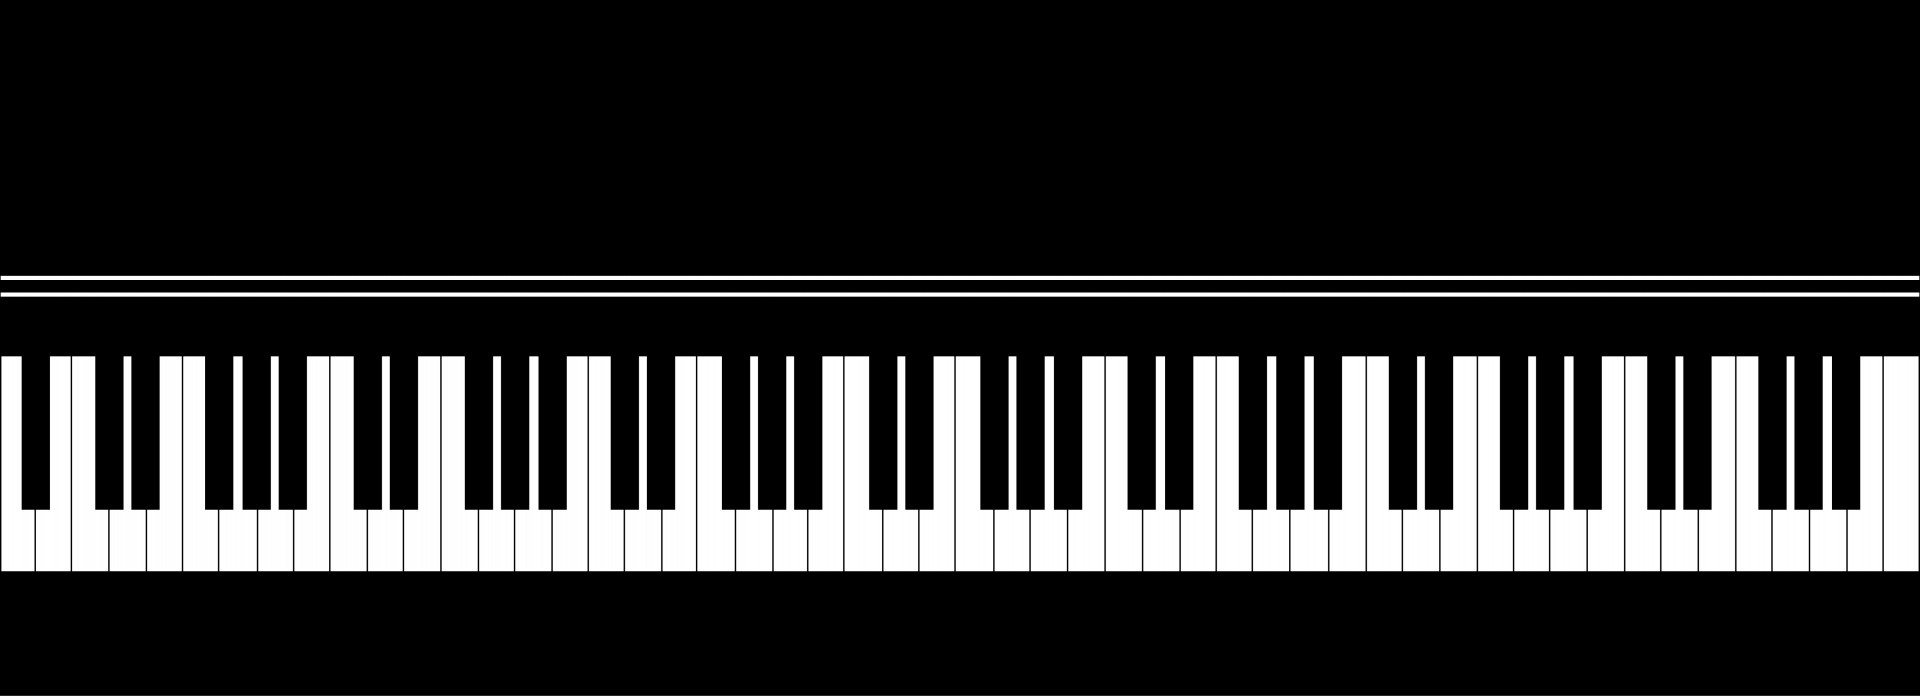 Шаблон клавиатуры пианино